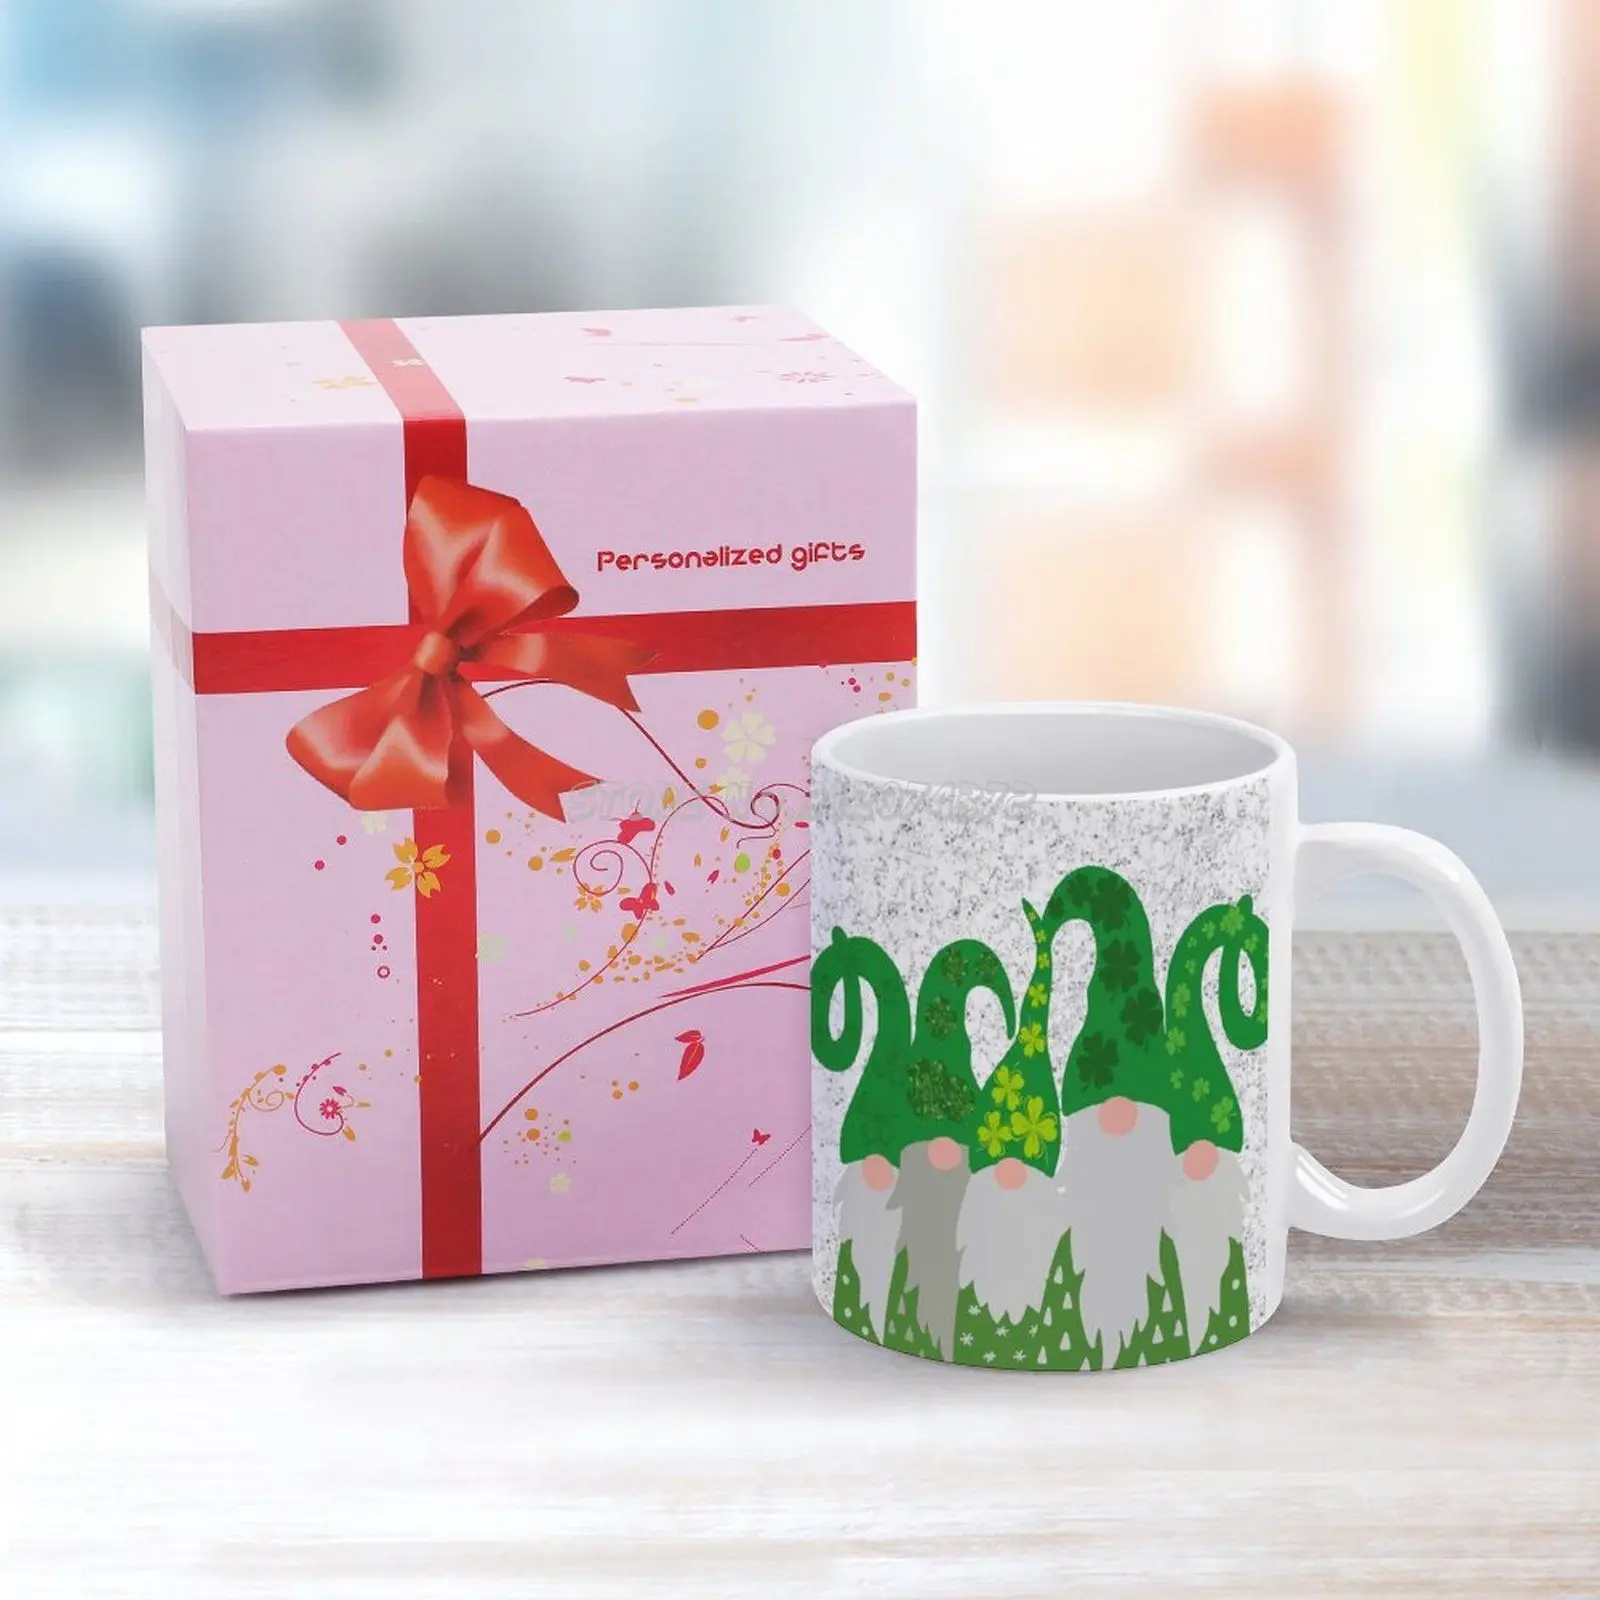 https://ae01.alicdn.com/kf/H624ace0418944dca8323a81f604d5ee9a/Day-Gnome-Coffee-Mugs-Pattern-Coffee-Mug-330ml-Milk-Water-Cup-Creative-Fathers-Day-Gifts-Irish.jpg